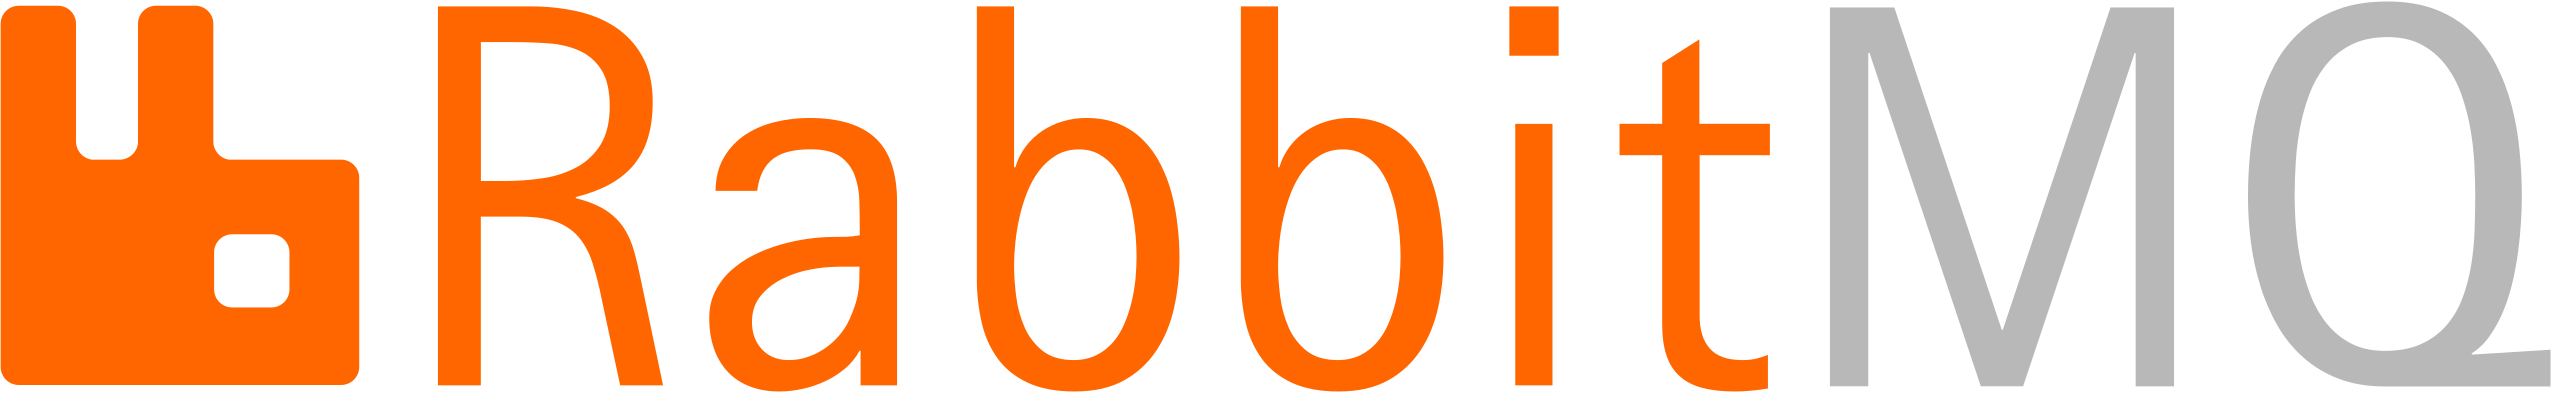 RabbitMQ Logo